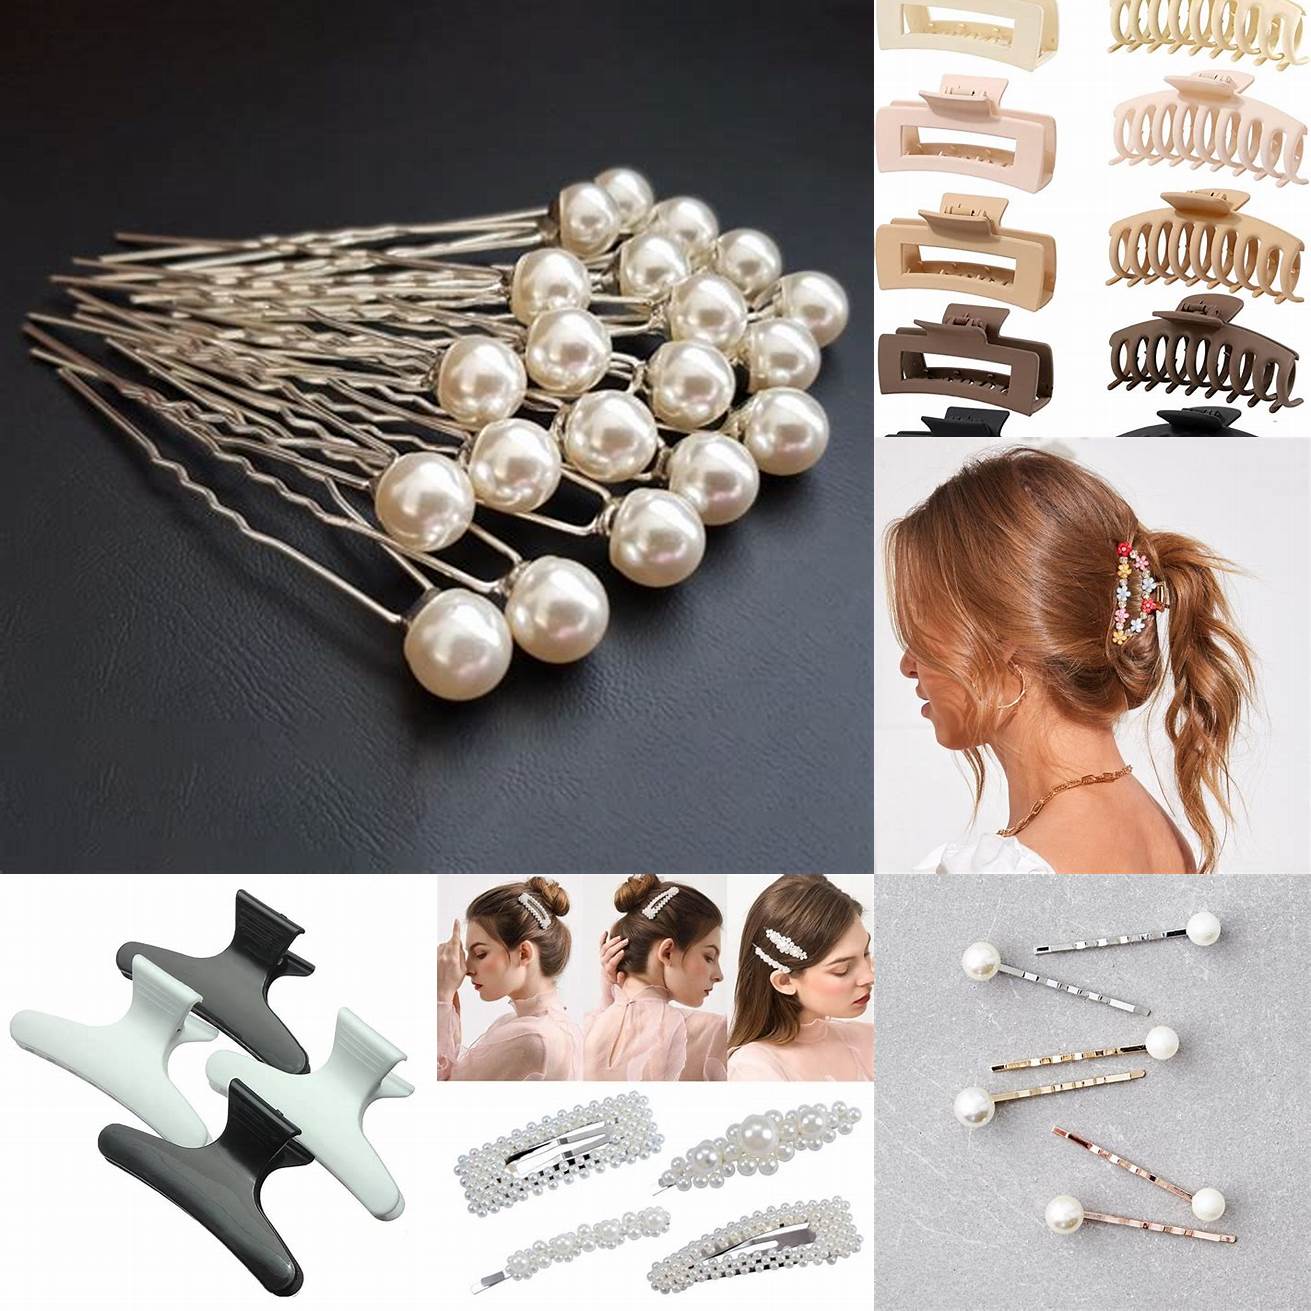 Pinces et épingles à cheveux des pinces ornées de perles ou de cristaux peuvent être utilisées pour fixer des mèches de cheveux sur le côté ou pour créer une demi-queue de cheval